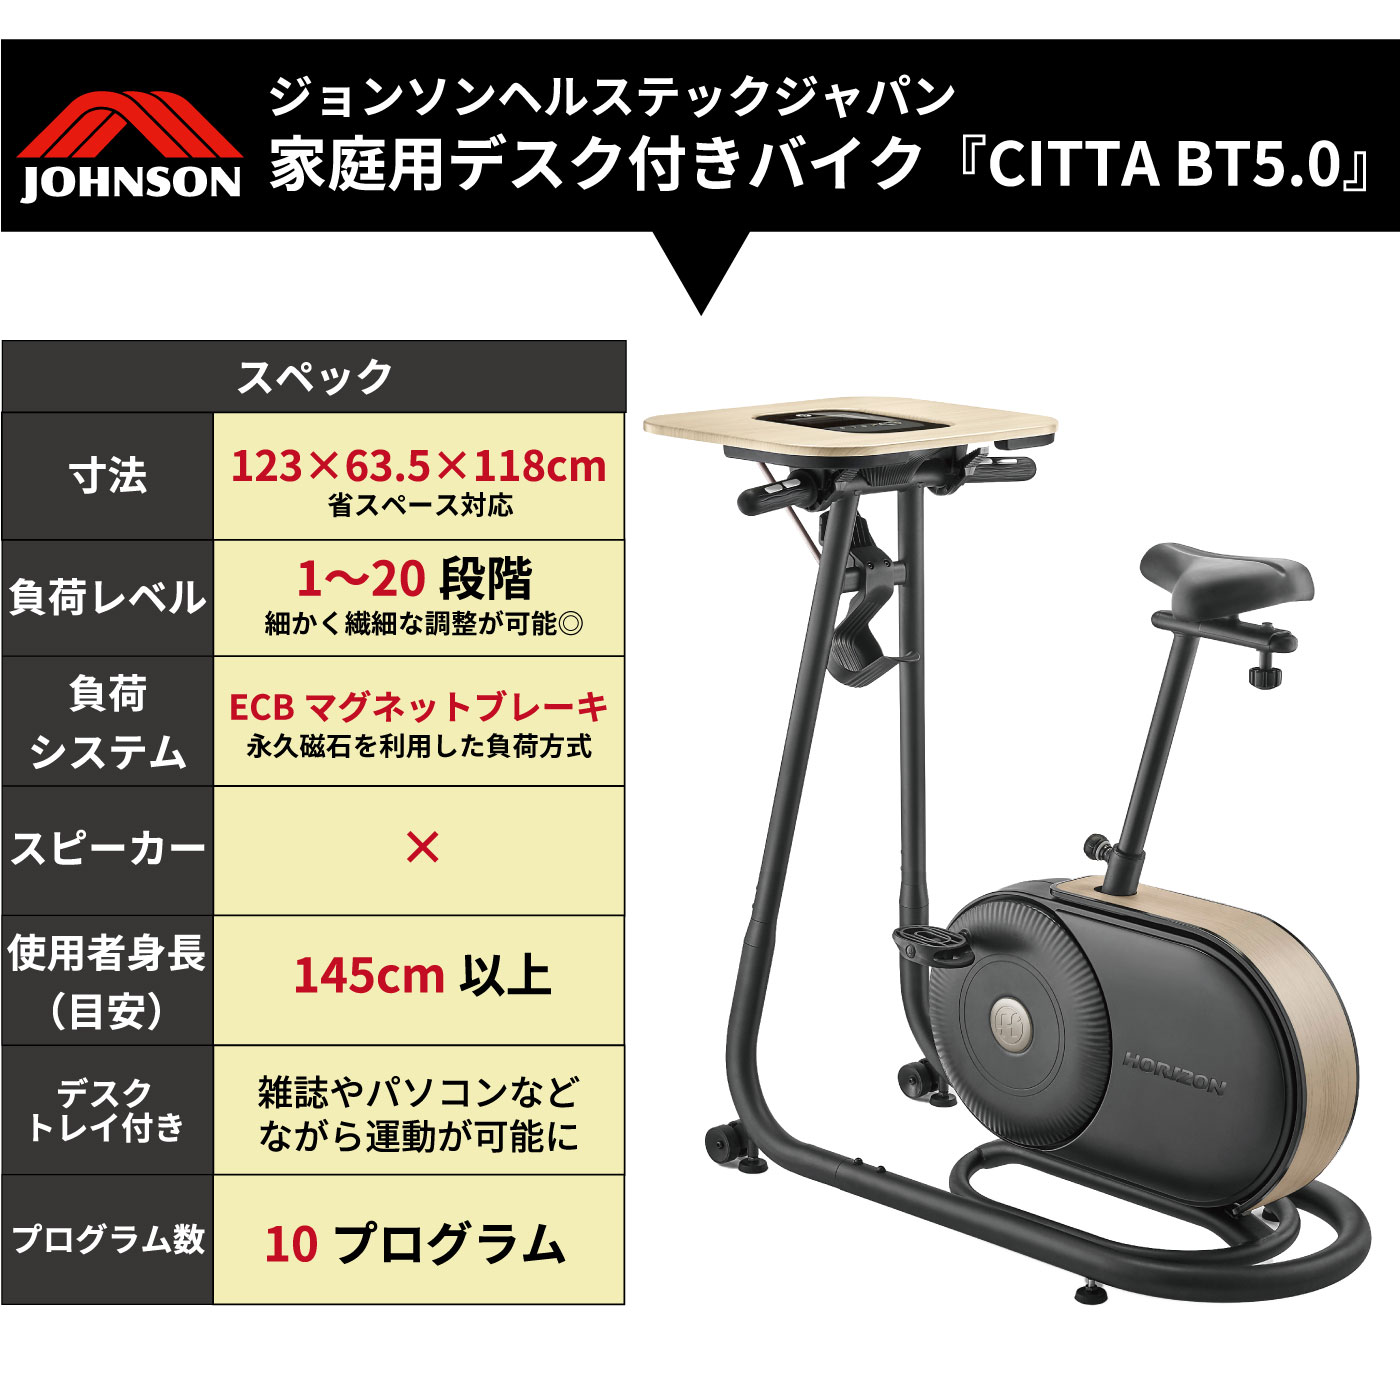 商品仕様JOHNSON CITTA BT5.0 木目調デスク付フィットネスバイク